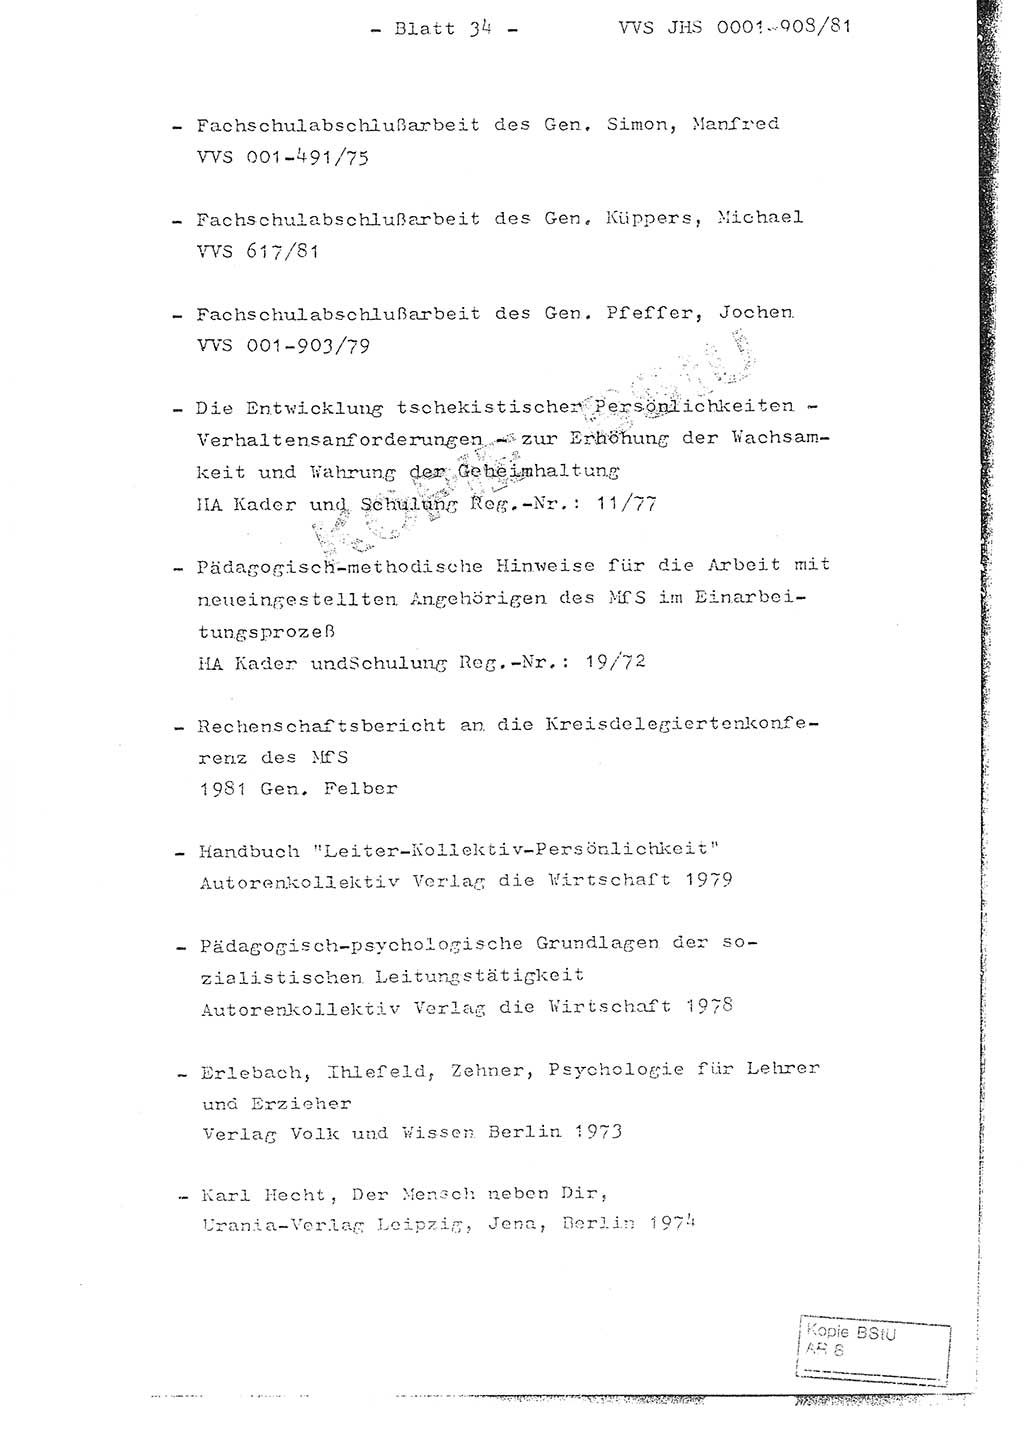 Fachschulabschlußarbeit Oberleutnant Wolfgang Wittmann (Abt. ⅩⅣ), Ministerium für Staatssicherheit (MfS) [Deutsche Demokratische Republik (DDR)], Juristische Hochschule (JHS), Vertrauliche Verschlußsache (VVS) o001-908/82, Potsdam 1982, Blatt 34 (FS-Abschl.-Arb. MfS DDR JHS VVS o001-908/82 1982, Bl. 34)